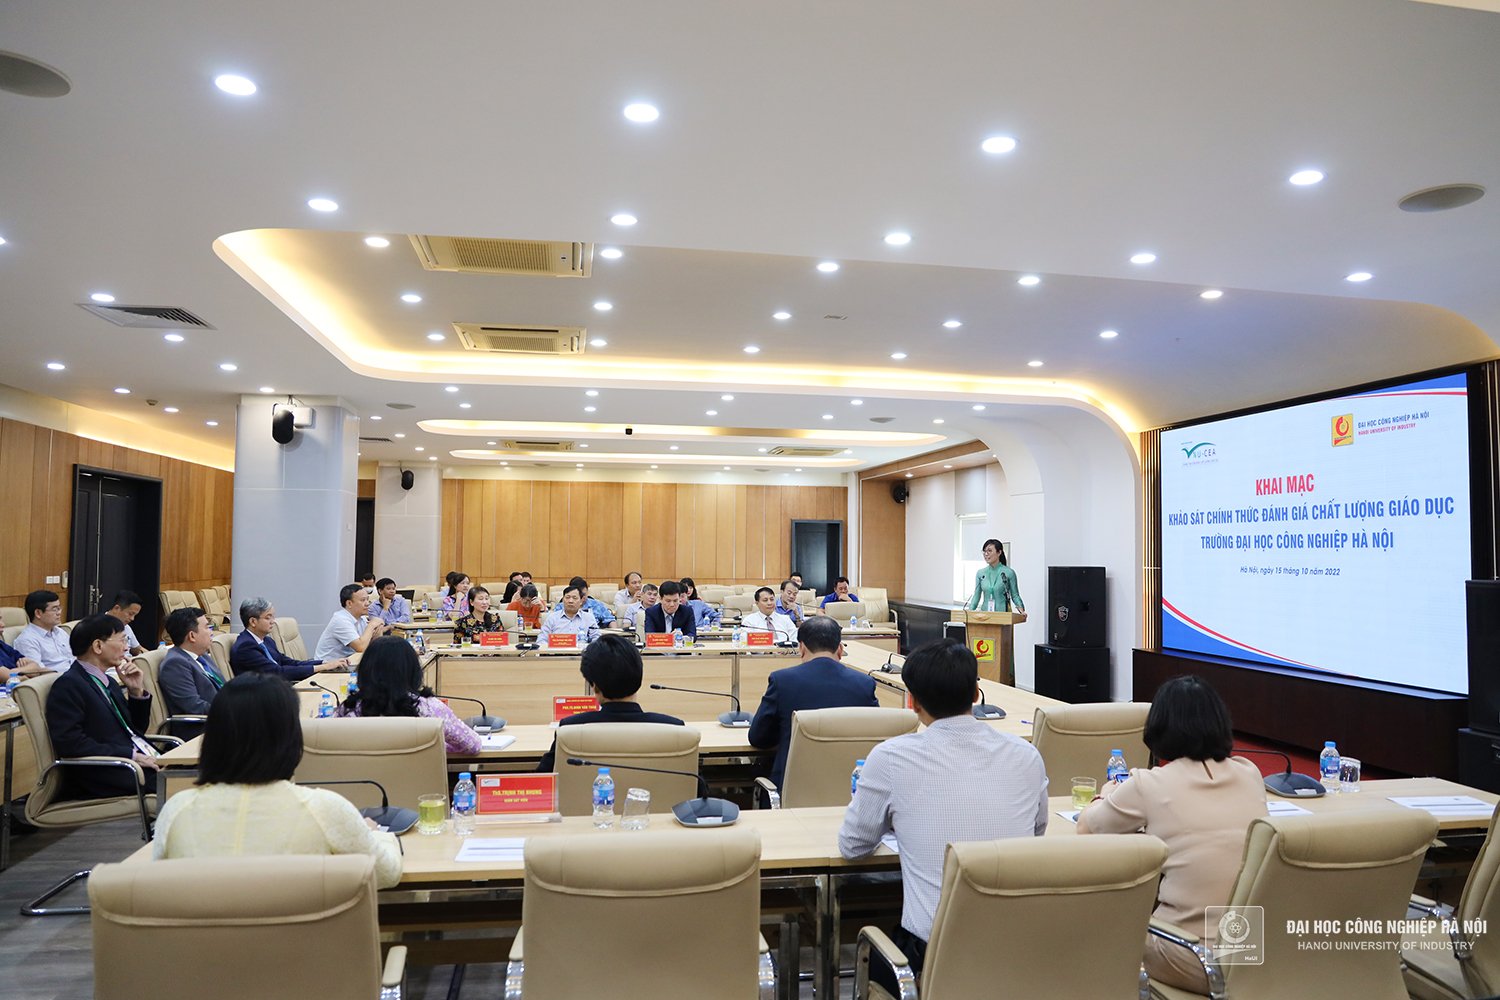 Khai mạc khảo sát chính thức đánh giá chất lượng cơ sở giáo dục Trường Đại học Công nghiệp Hà Nội